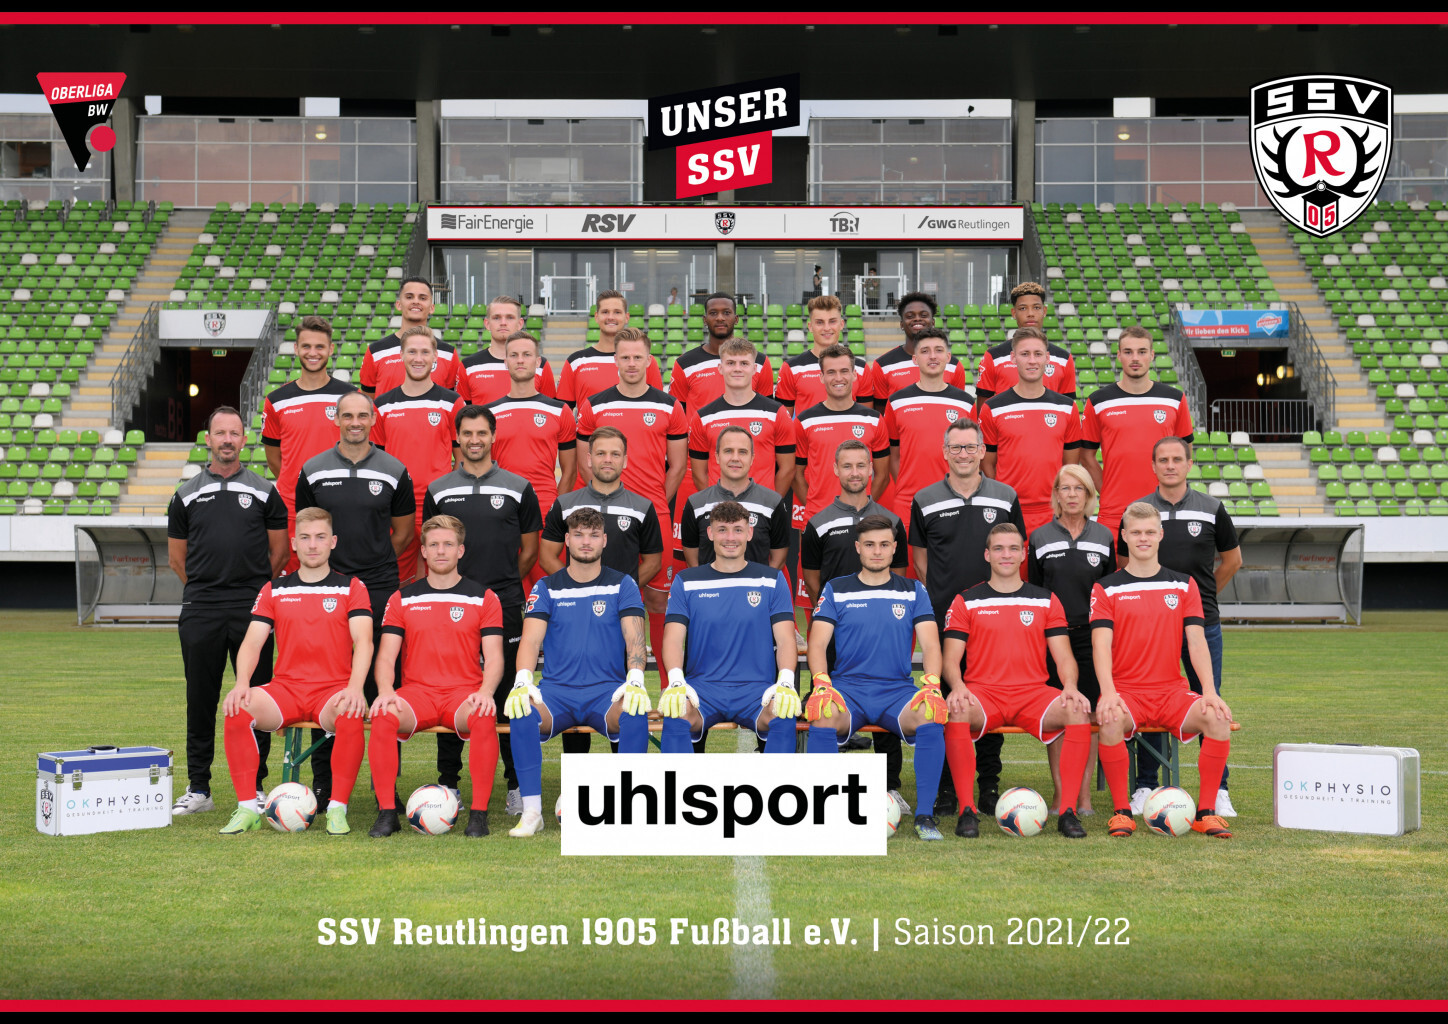 SSV Reutlingen Mannschaftsfoto in uhlsport Trikots